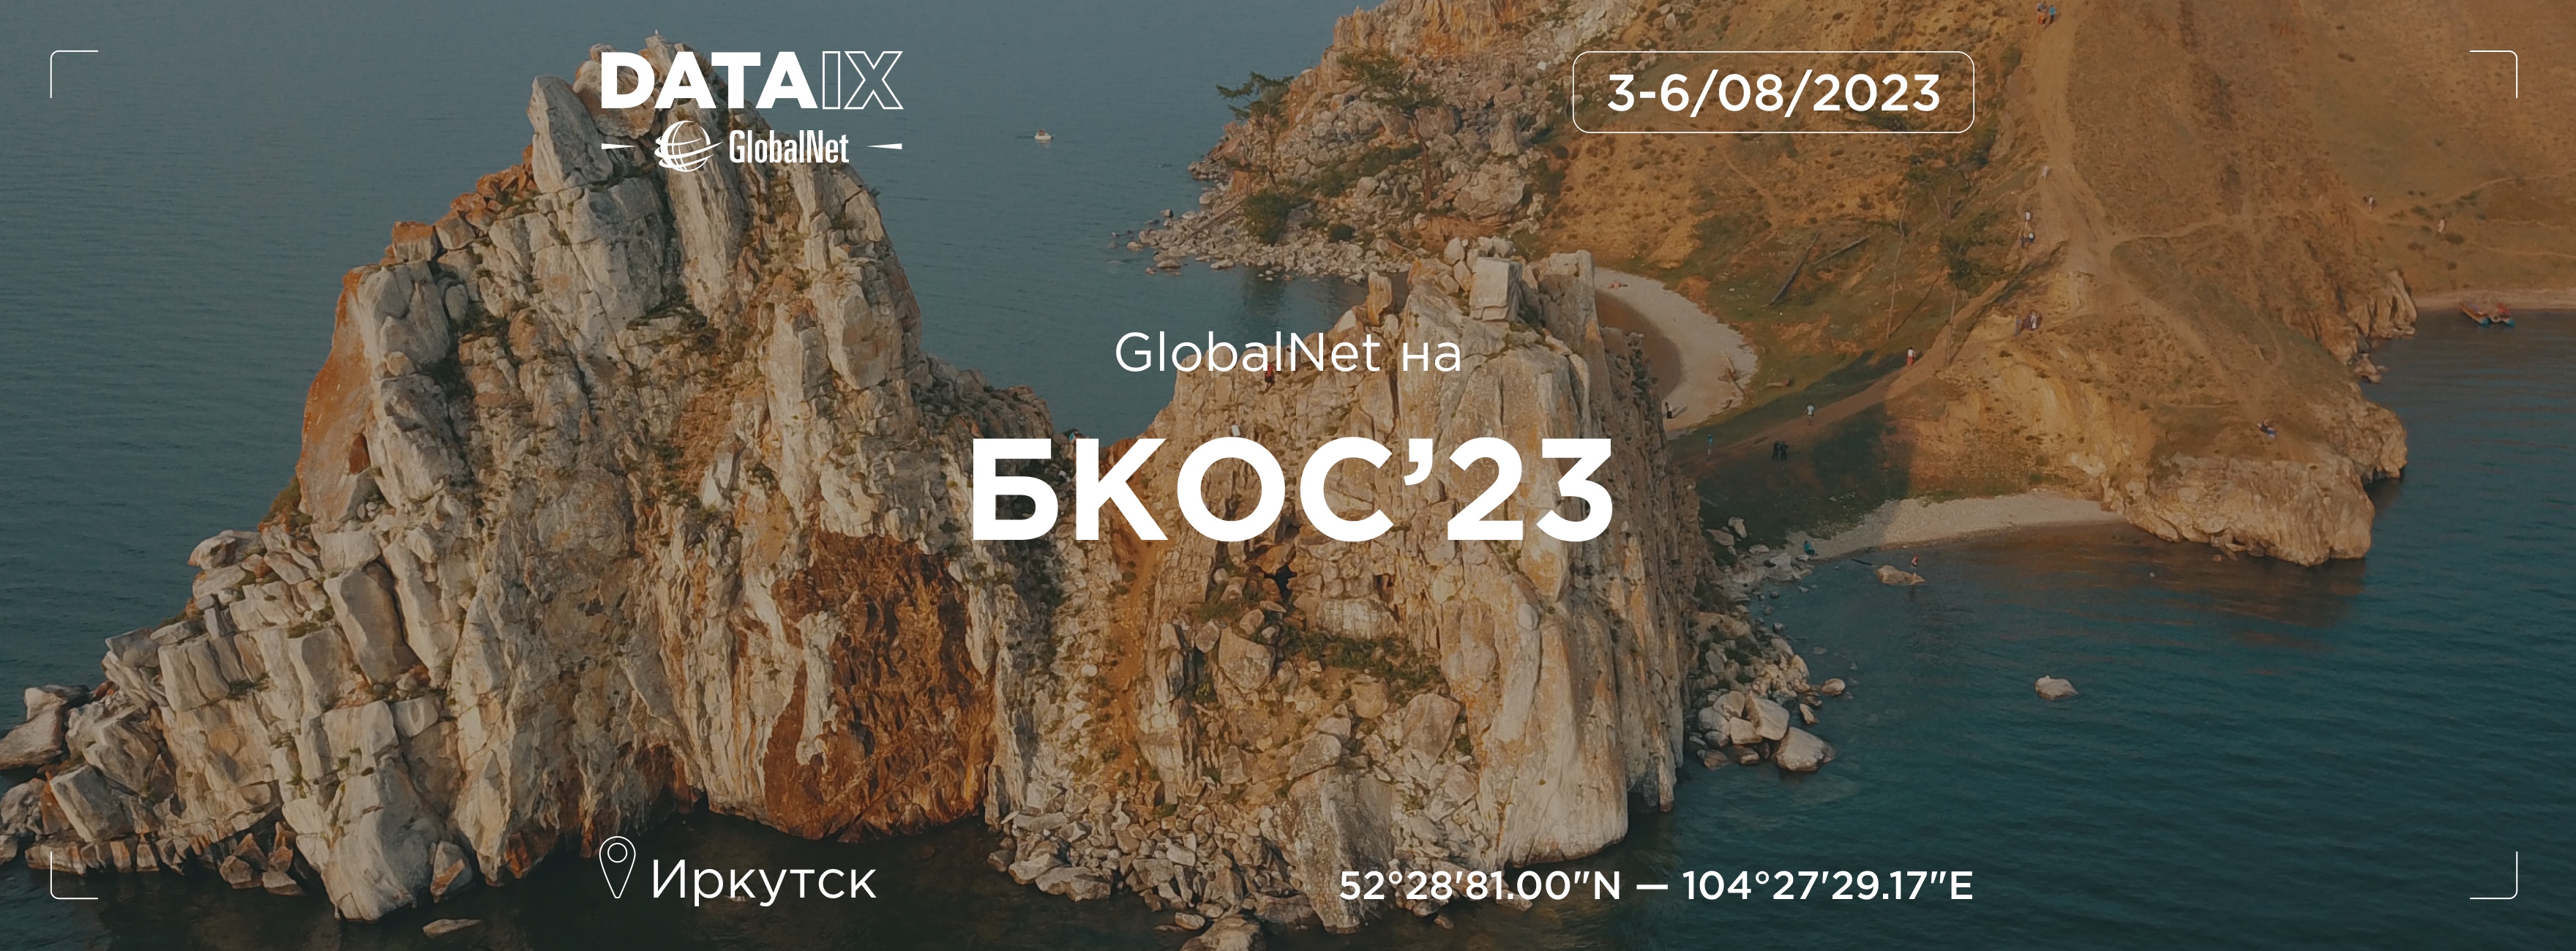 БКОС 2023: GlobalNet/DATAIX выступит партнерами с Милеком и Зуммер